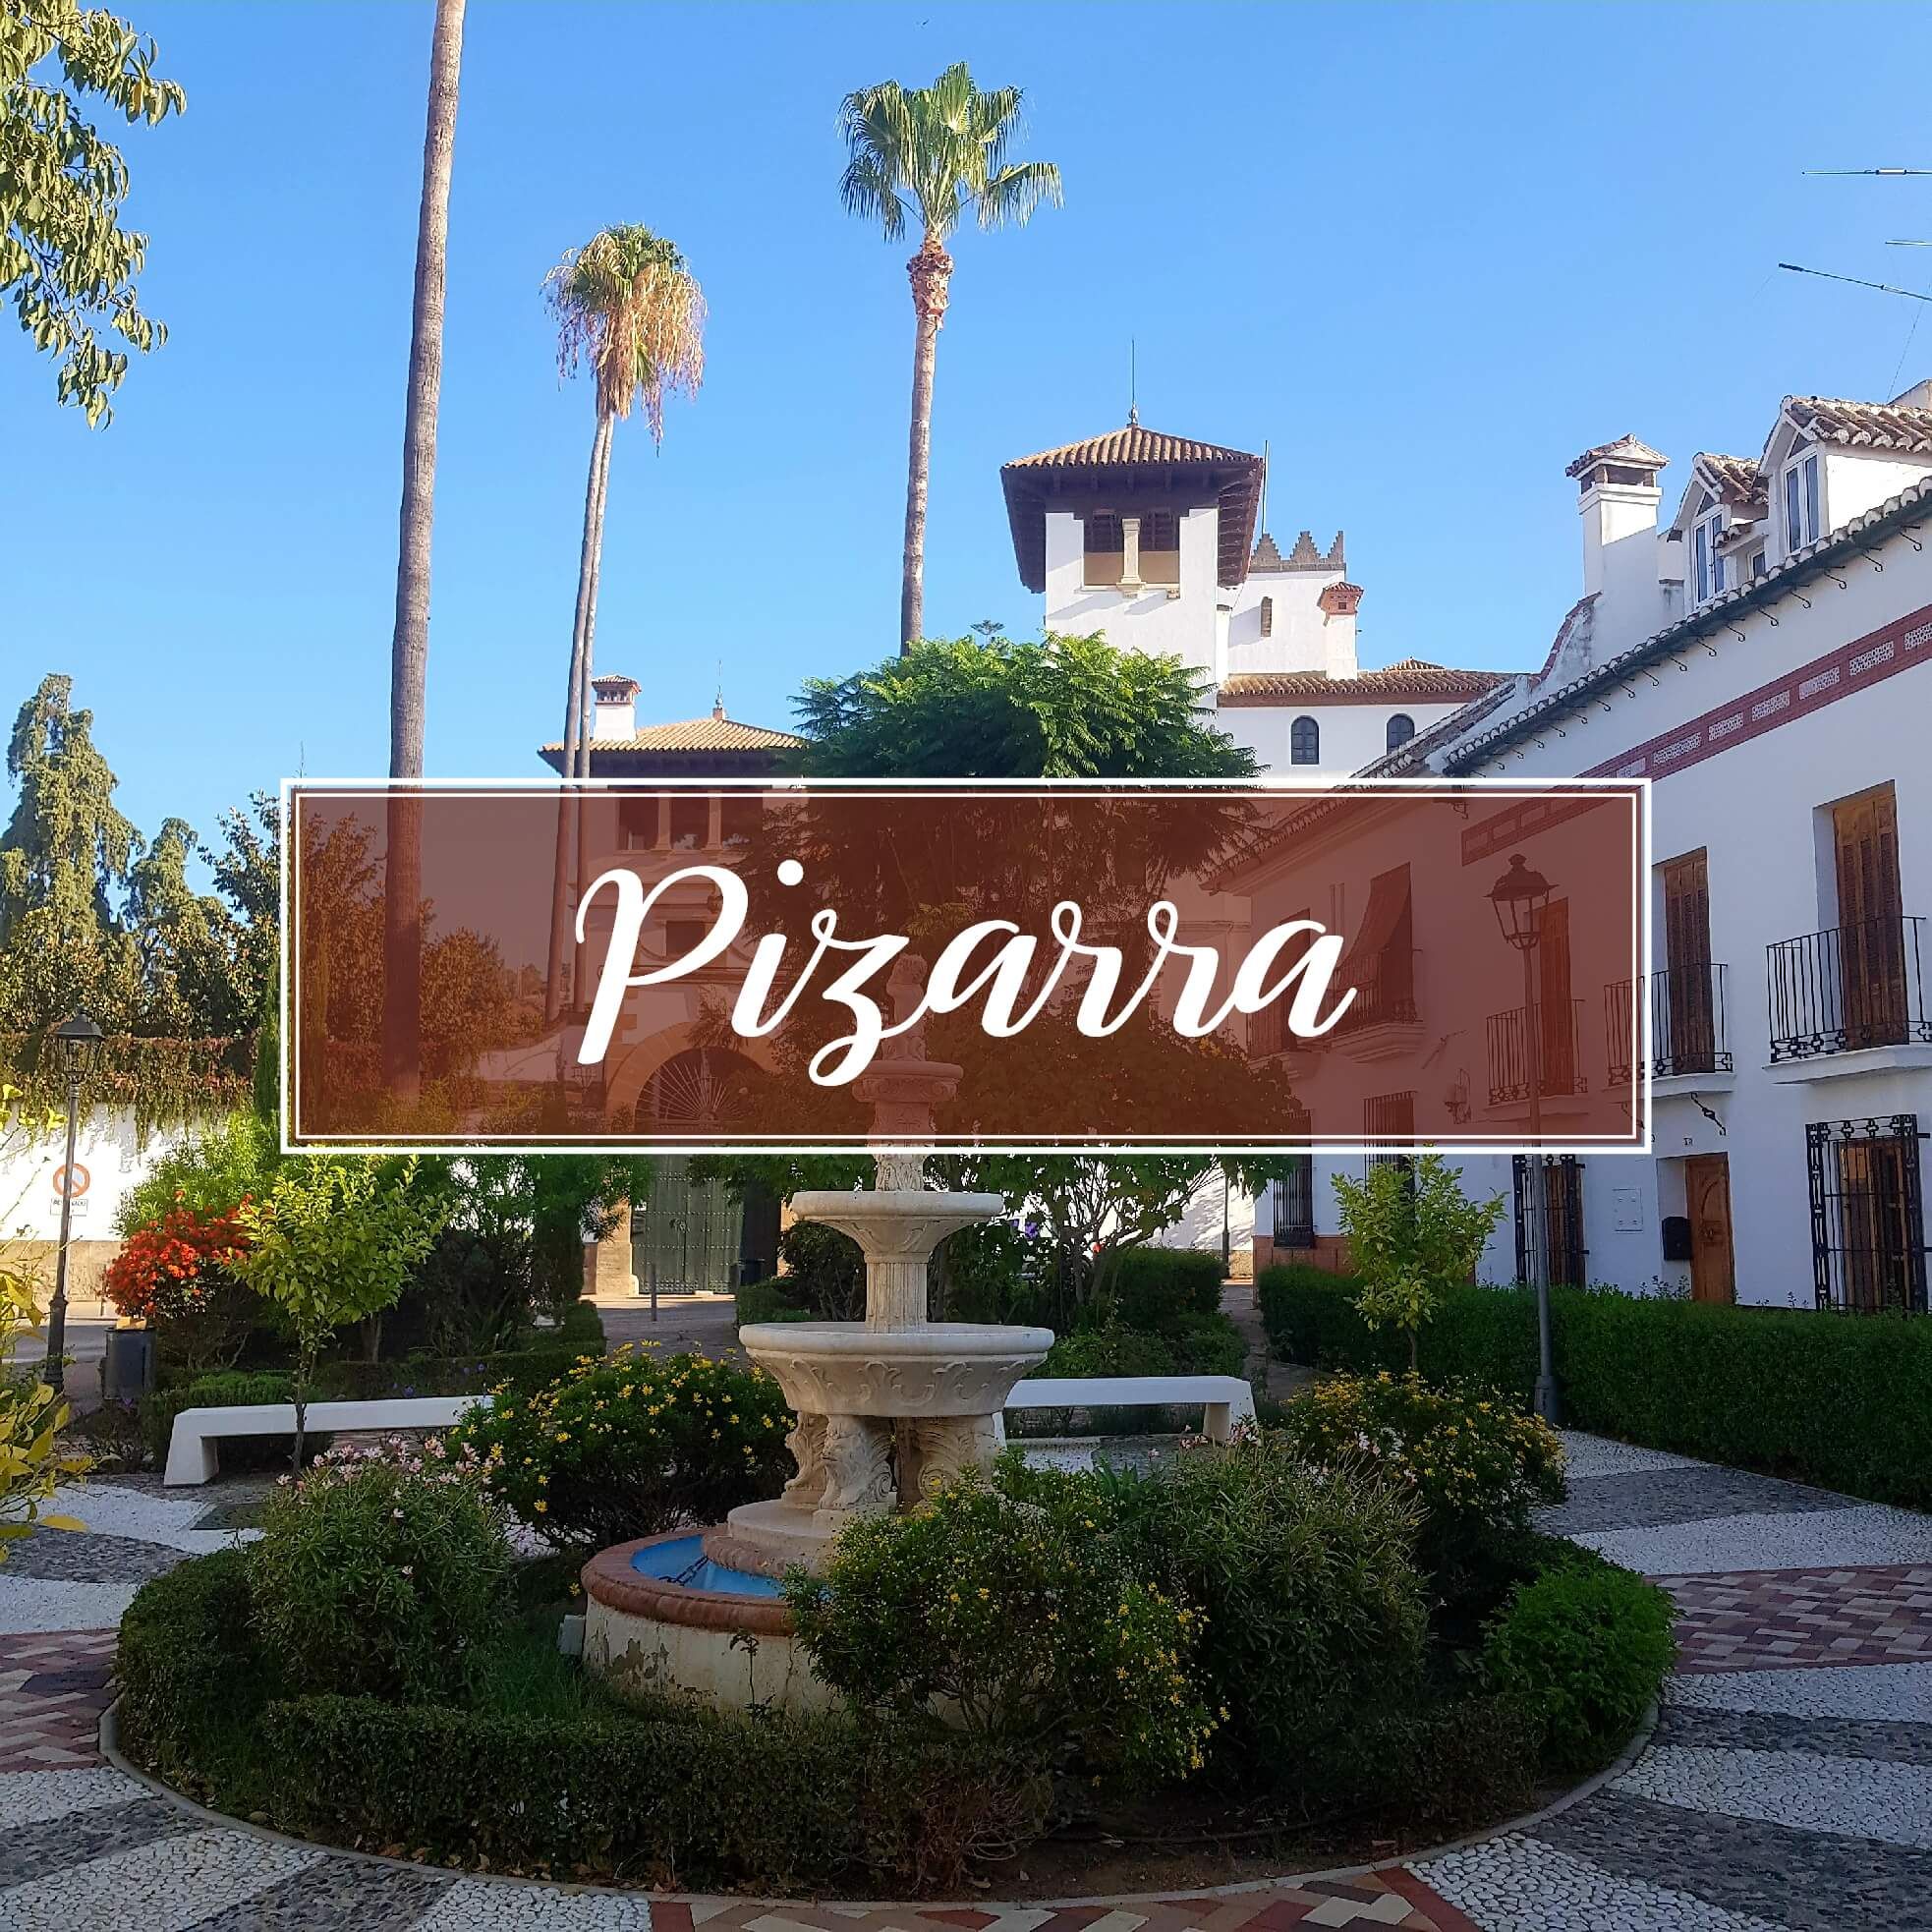 El Ayuntamiento de Pizarra construirá un Mercadona en La vega Hipolito